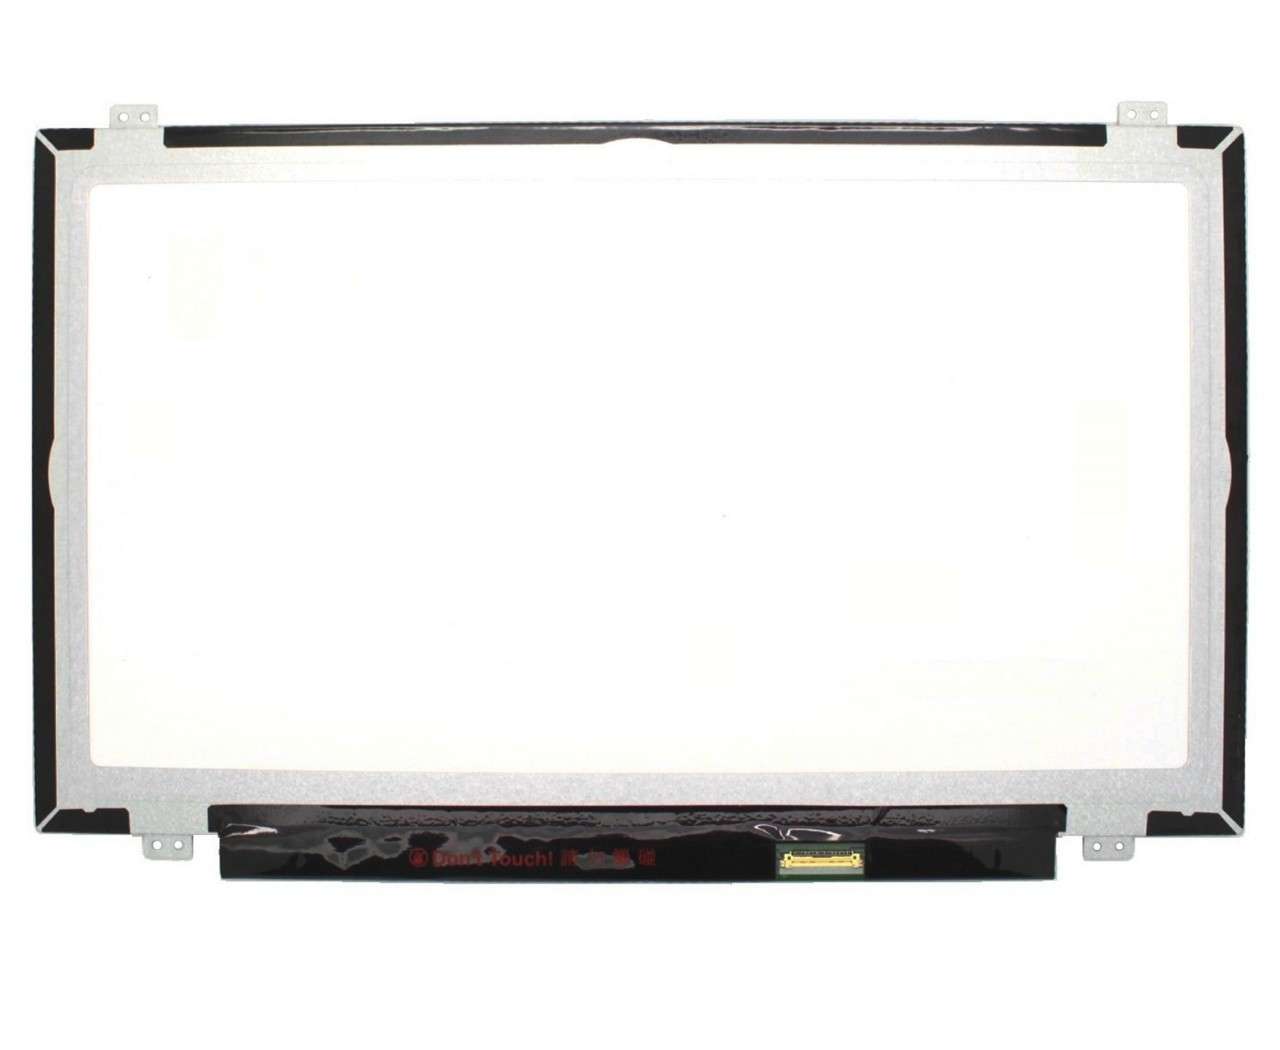 Display laptop BOE N140HGE-EA1 REV C2 Ecran 14.0 1920×1080 30 pini eDP imagine 2021 BOE